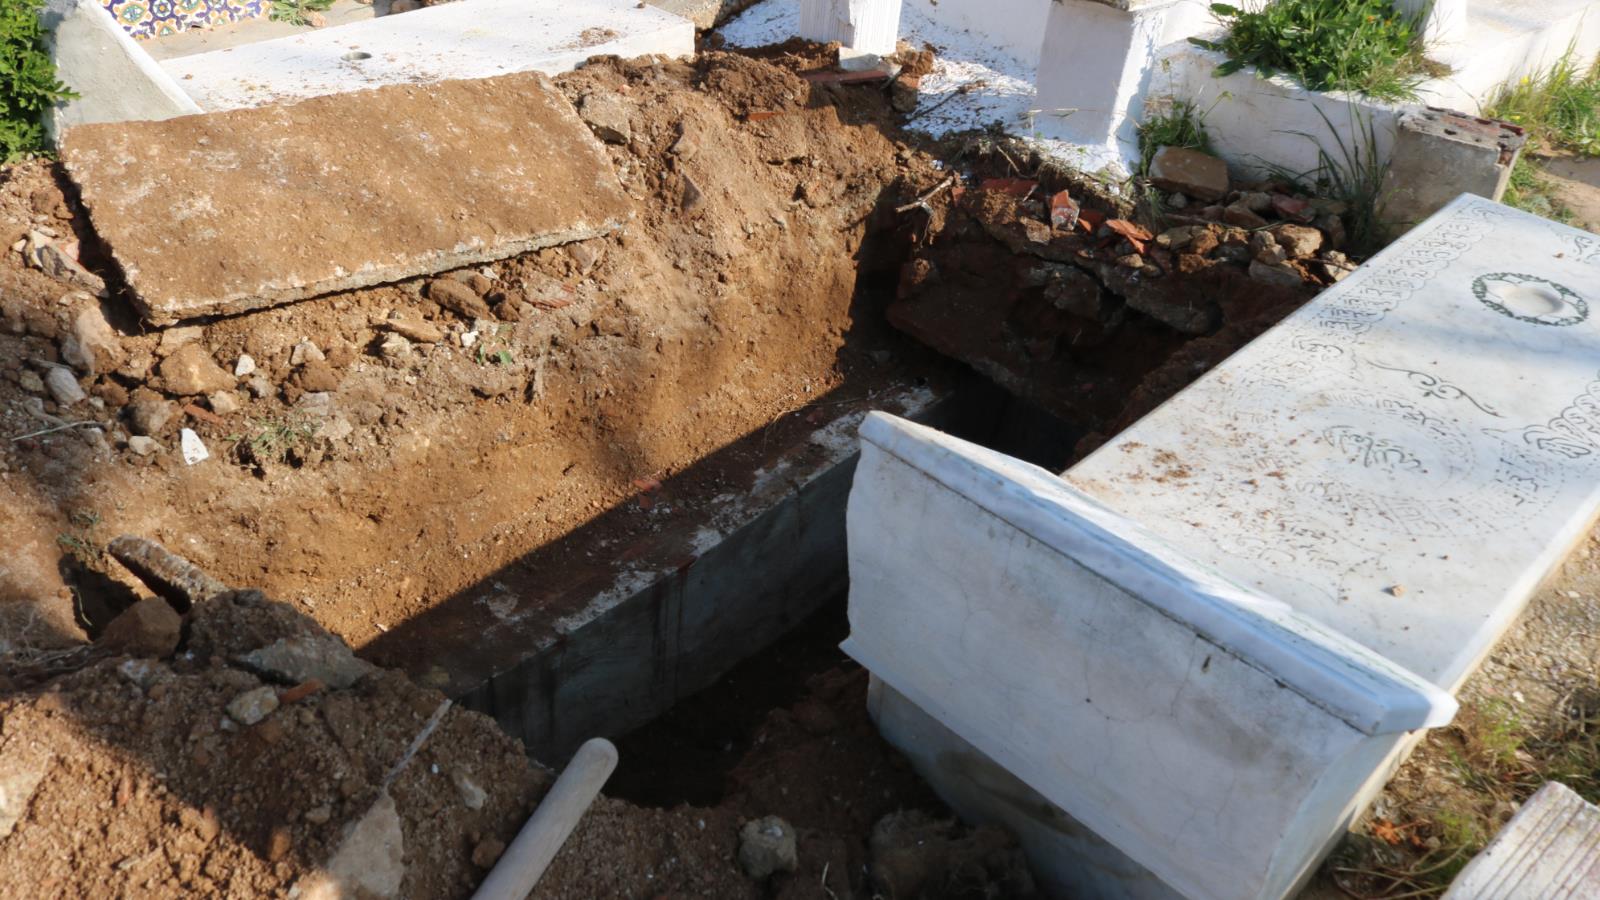 ‪إعادة فتح القبر لدفن جثامين جديدة في ظل اكتظاظ المقابر‬ إعادة فتح القبر لدفن جثامين جديدة في ظل اكتظاظ المقابر (الجزيرة)